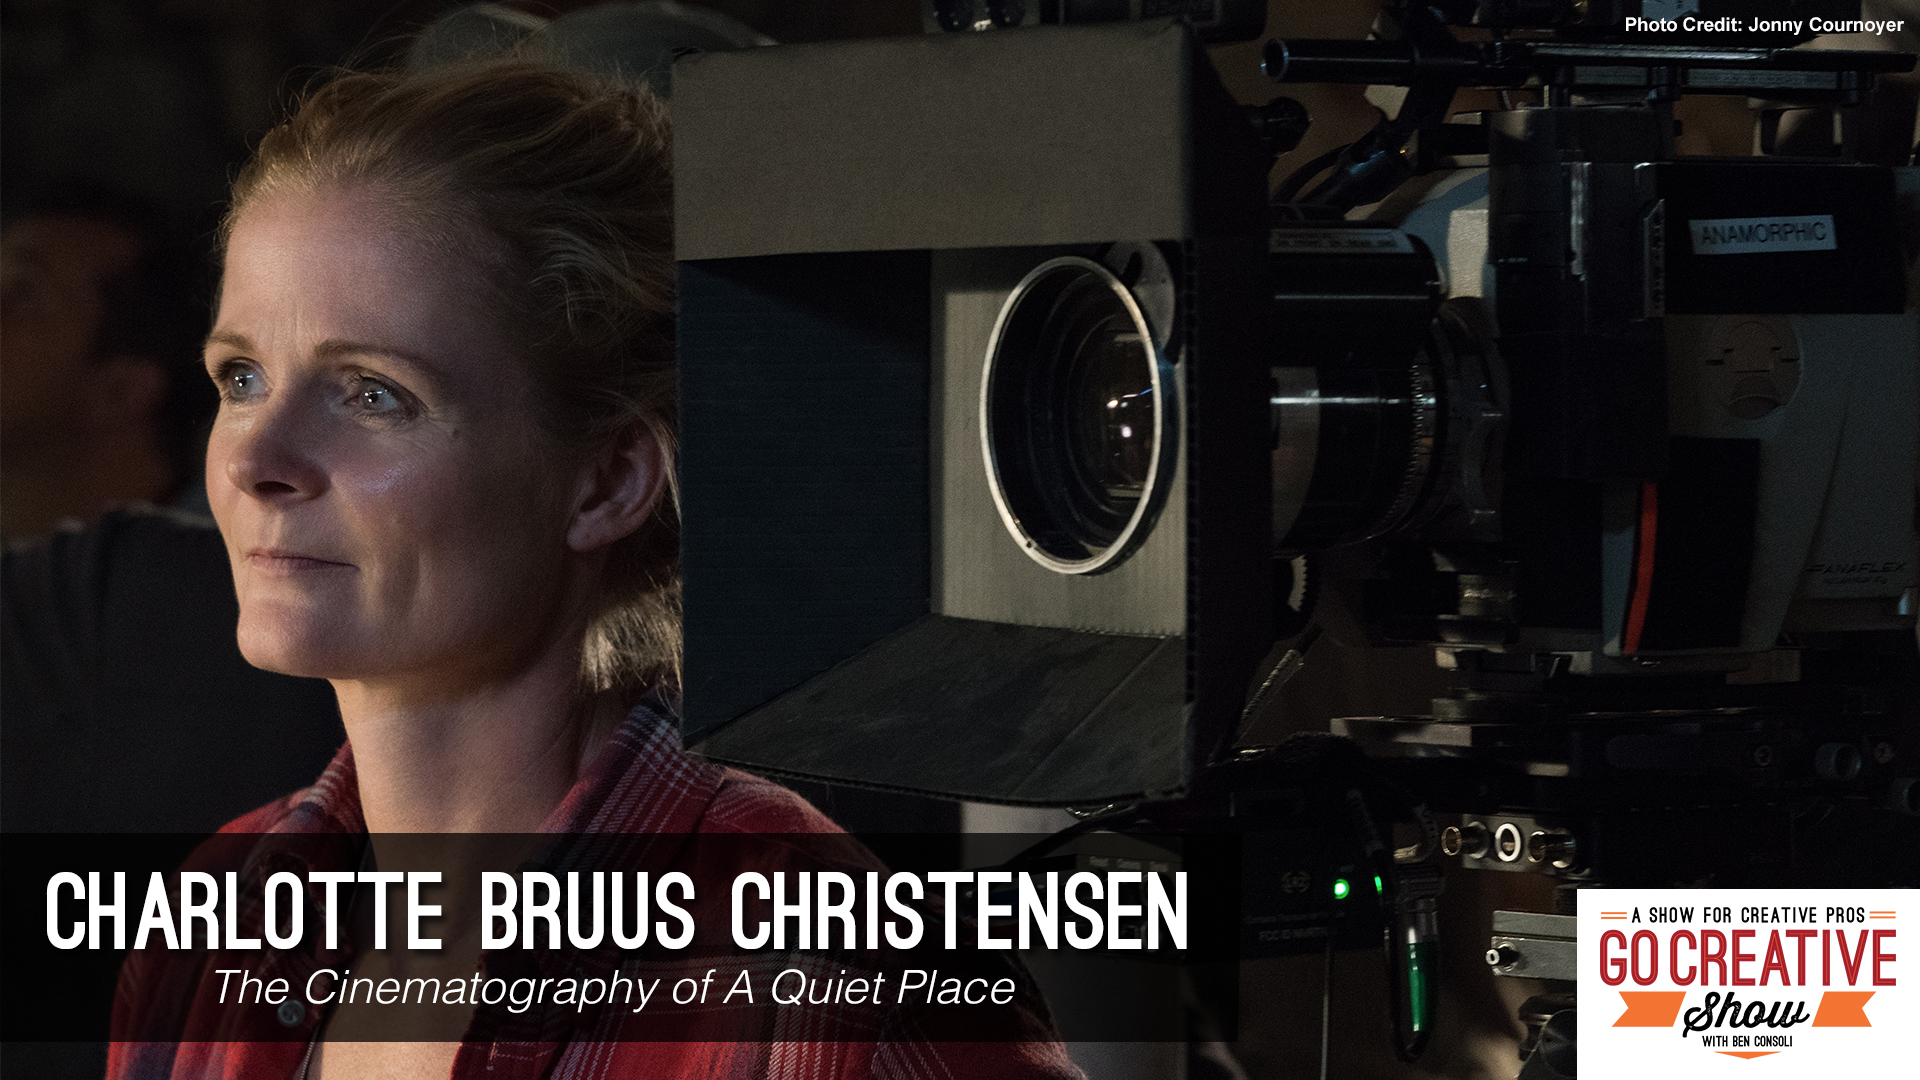 Charlotte Bruus Christensen on Go Creative Show with Ben Consoli